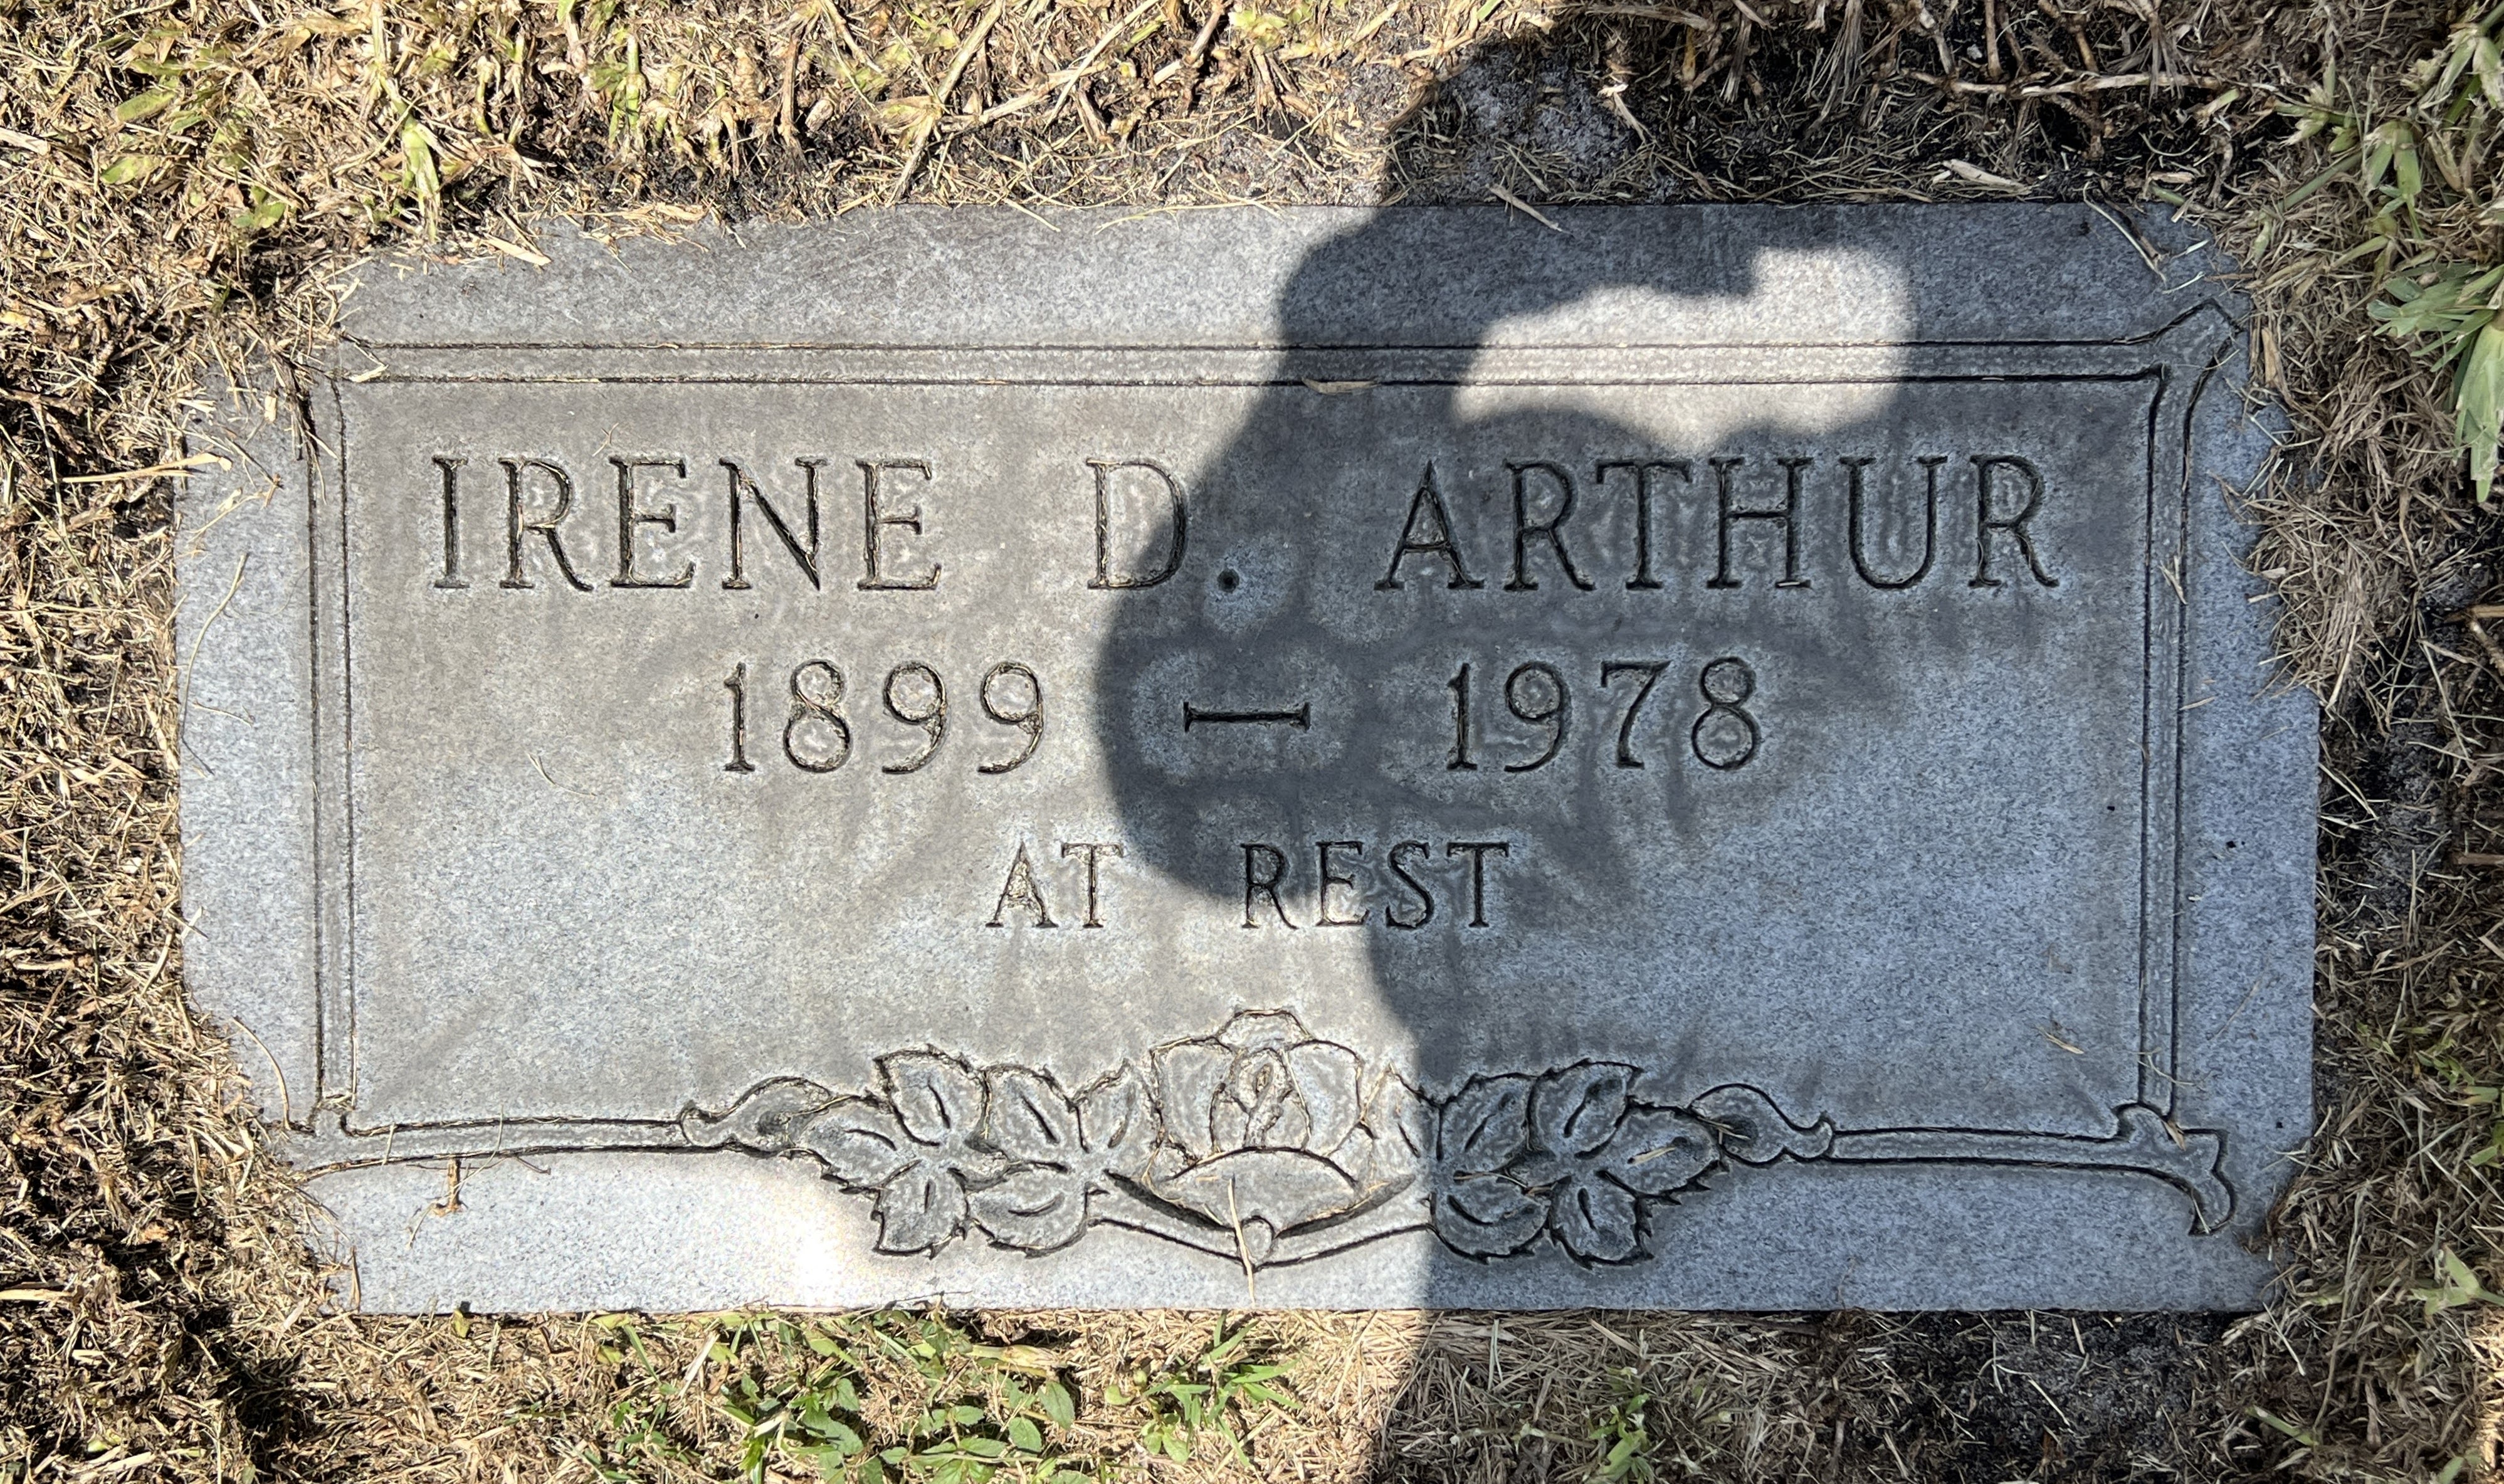 Irene D Arthur